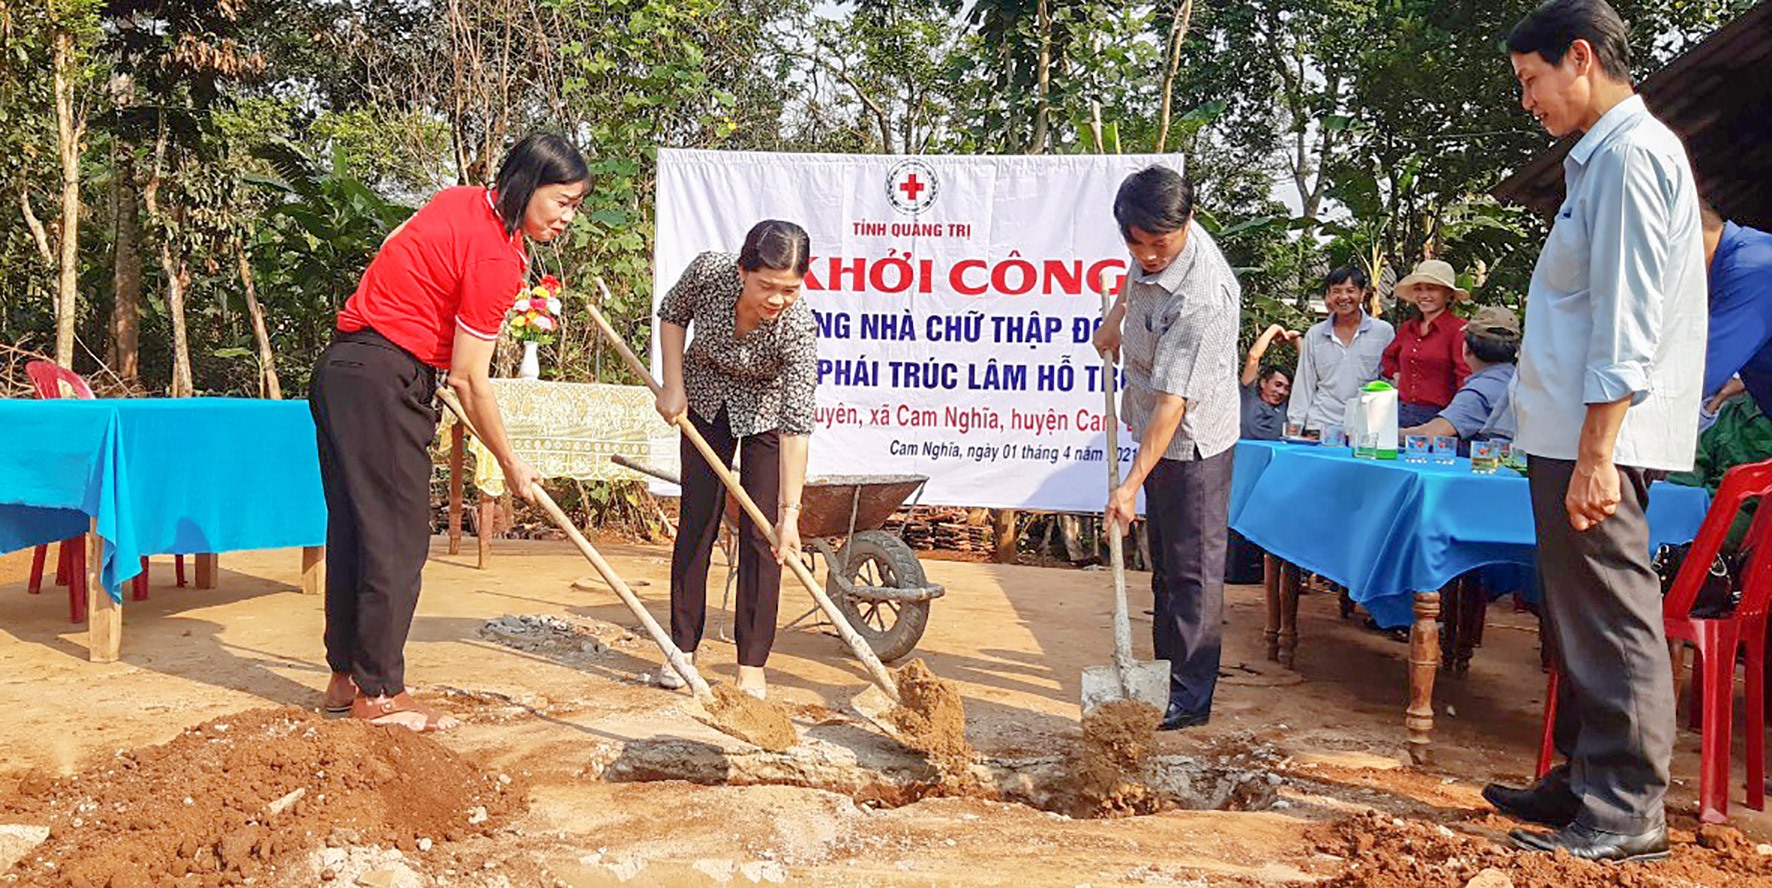 Khởi công xây dựng nhà Chữ thập đỏ cho bà Võ Thị Duyên ở thôn Thượng Nghĩa, xã Cam Nghĩa, huyện Cam Lộ - Ảnh: Lê Trường